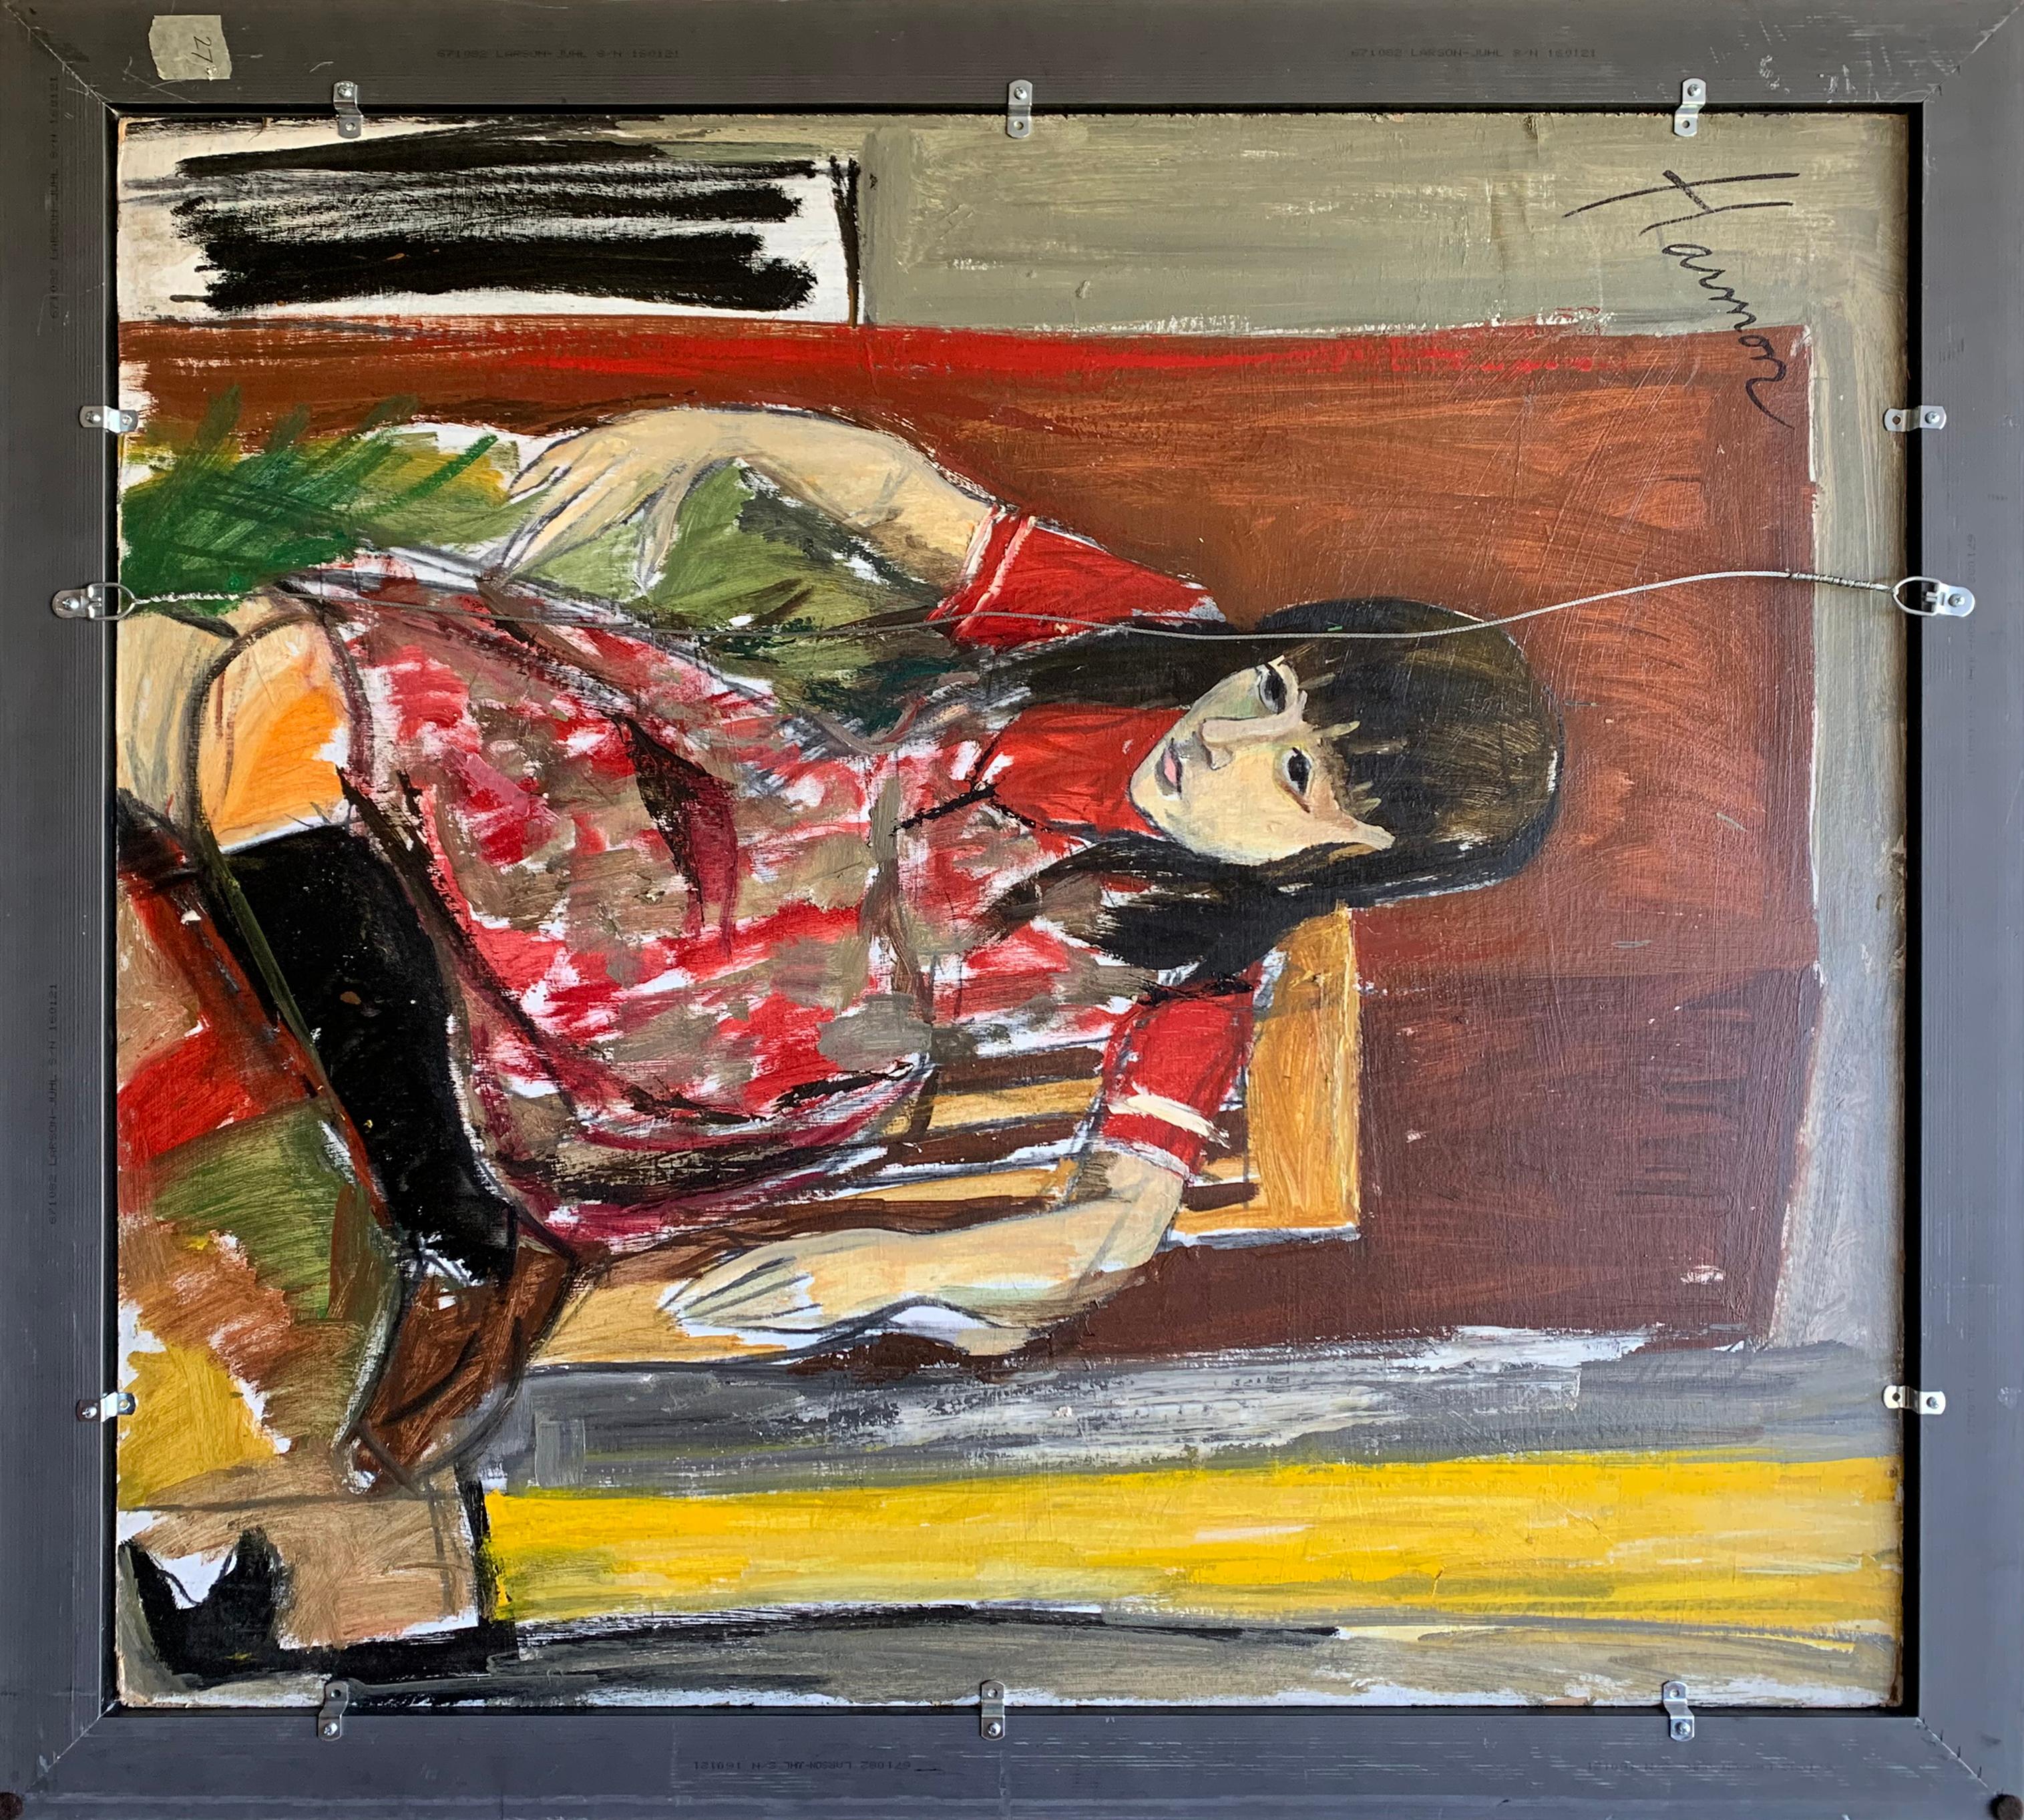 Deux filles à l'école, portrait expressionniste d'un artiste de Philadelphie - Expressionniste Painting par Bernard Harmon